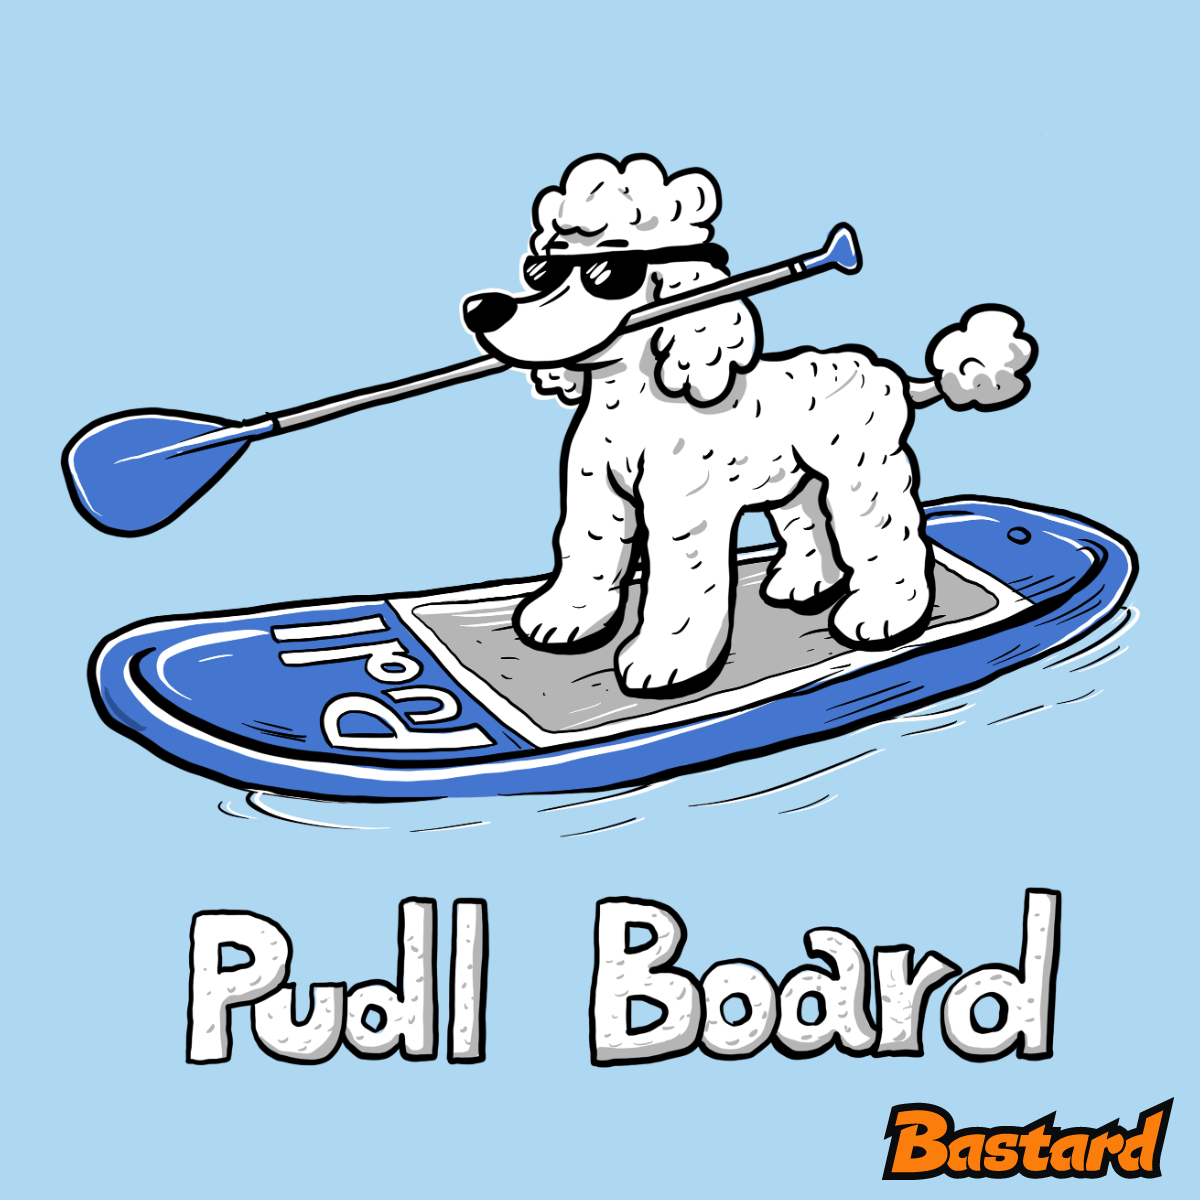 Pudl board